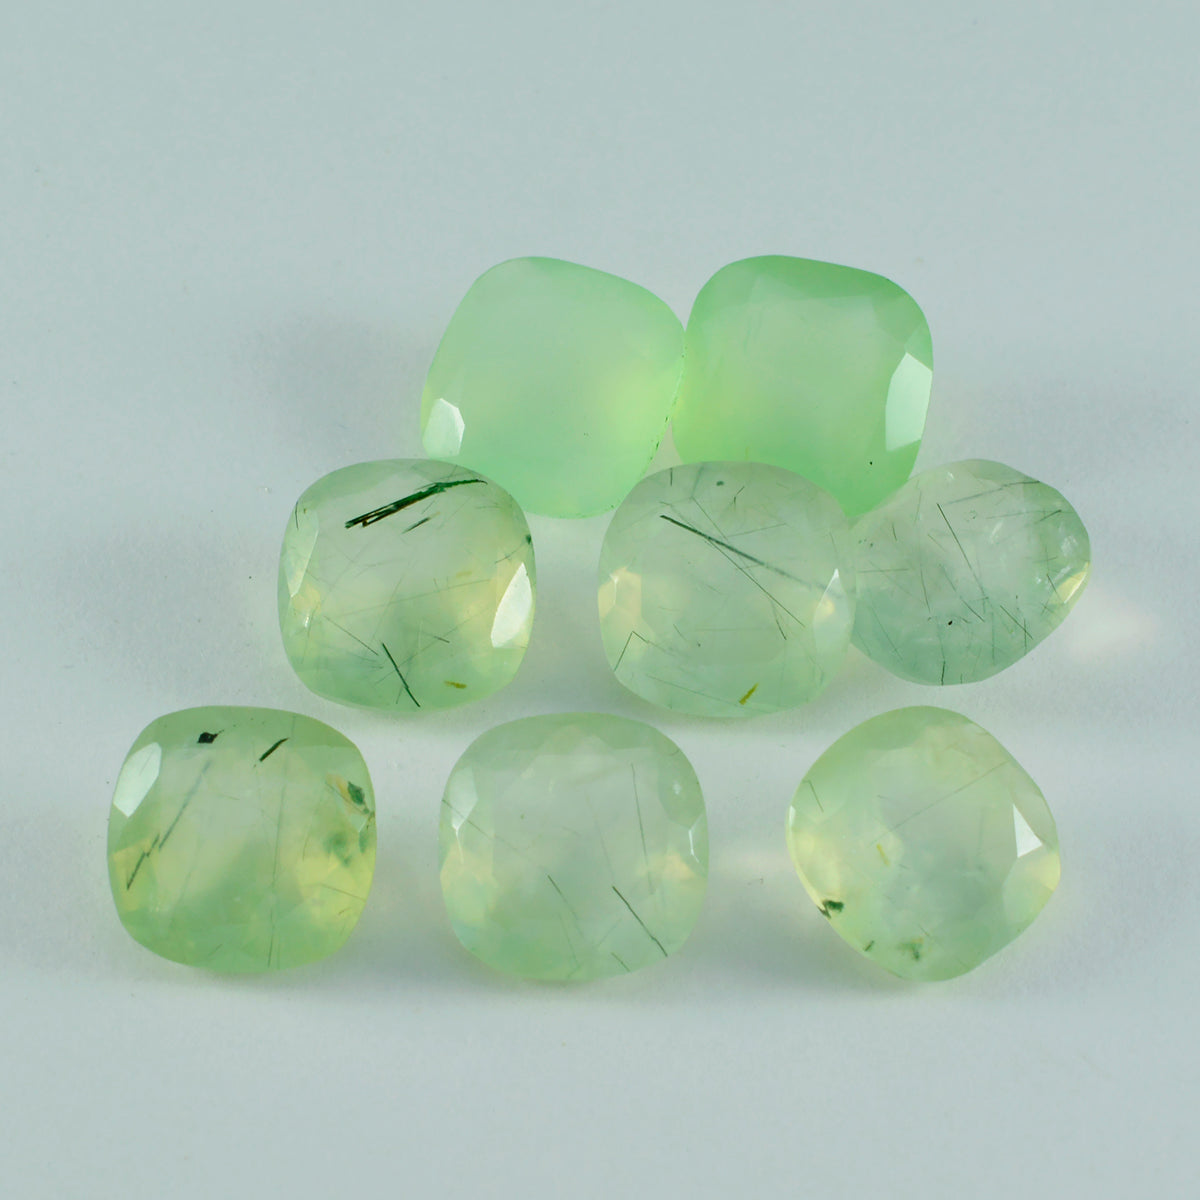 riyogems 1шт зеленый пренит ограненный 6х6 мм форма «кушон» А + 1 драгоценный камень качества